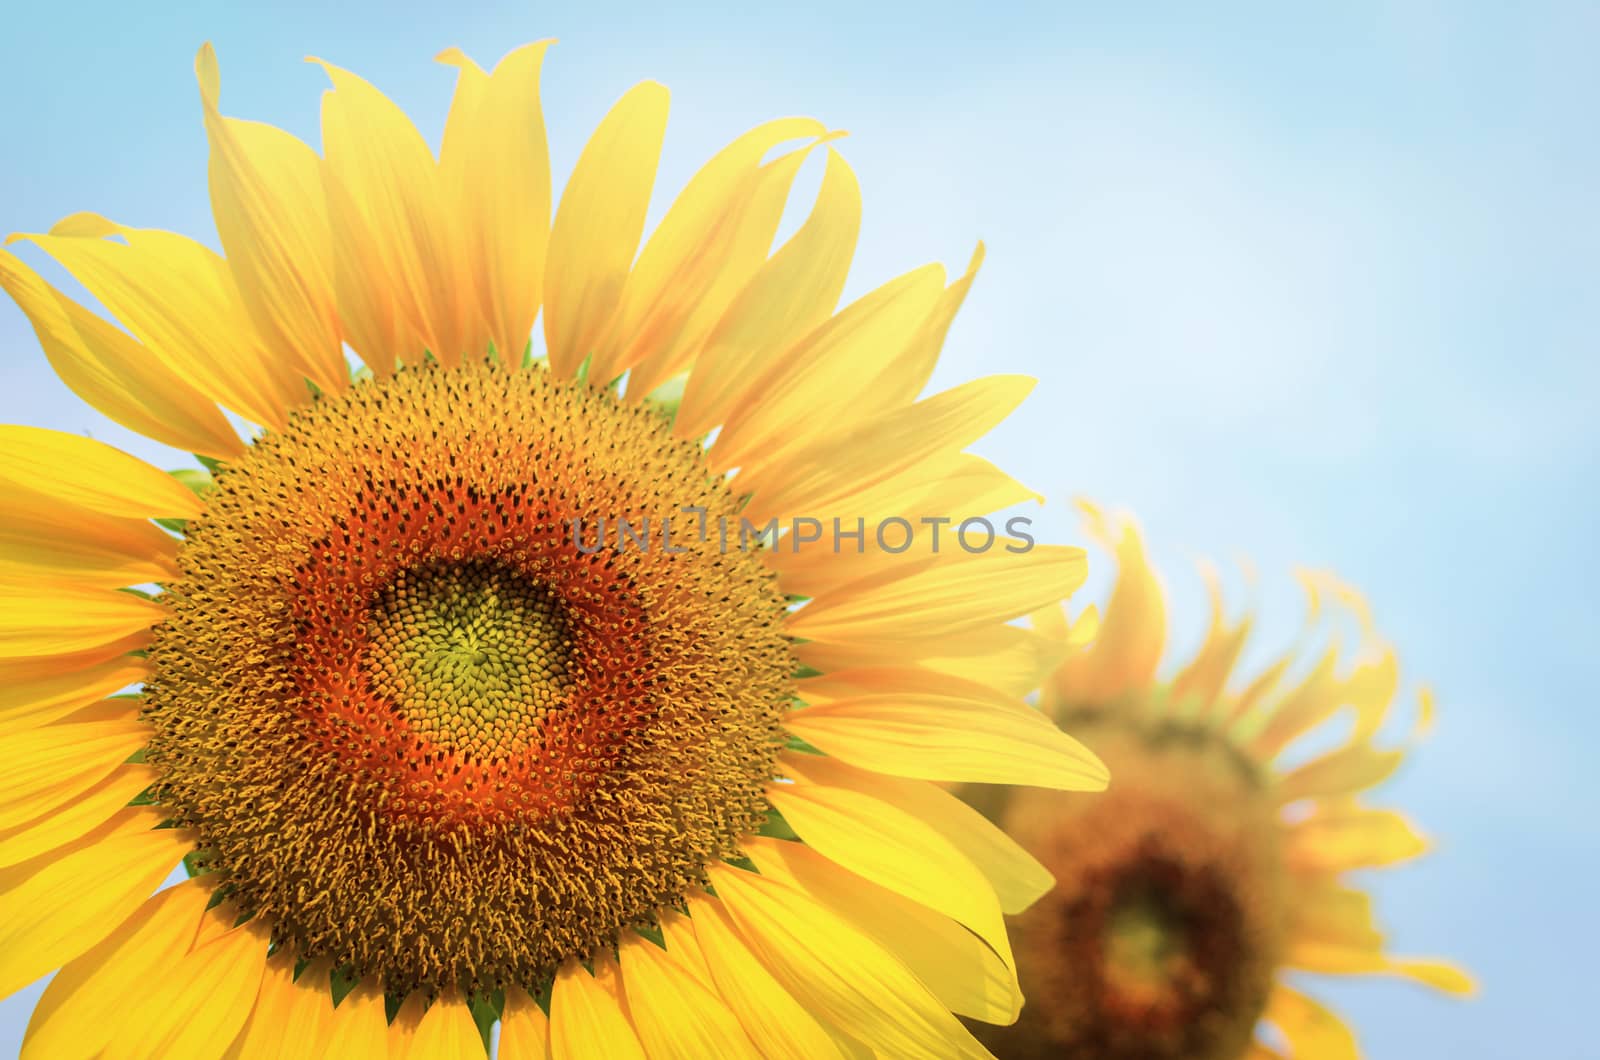 sun flower by nop16